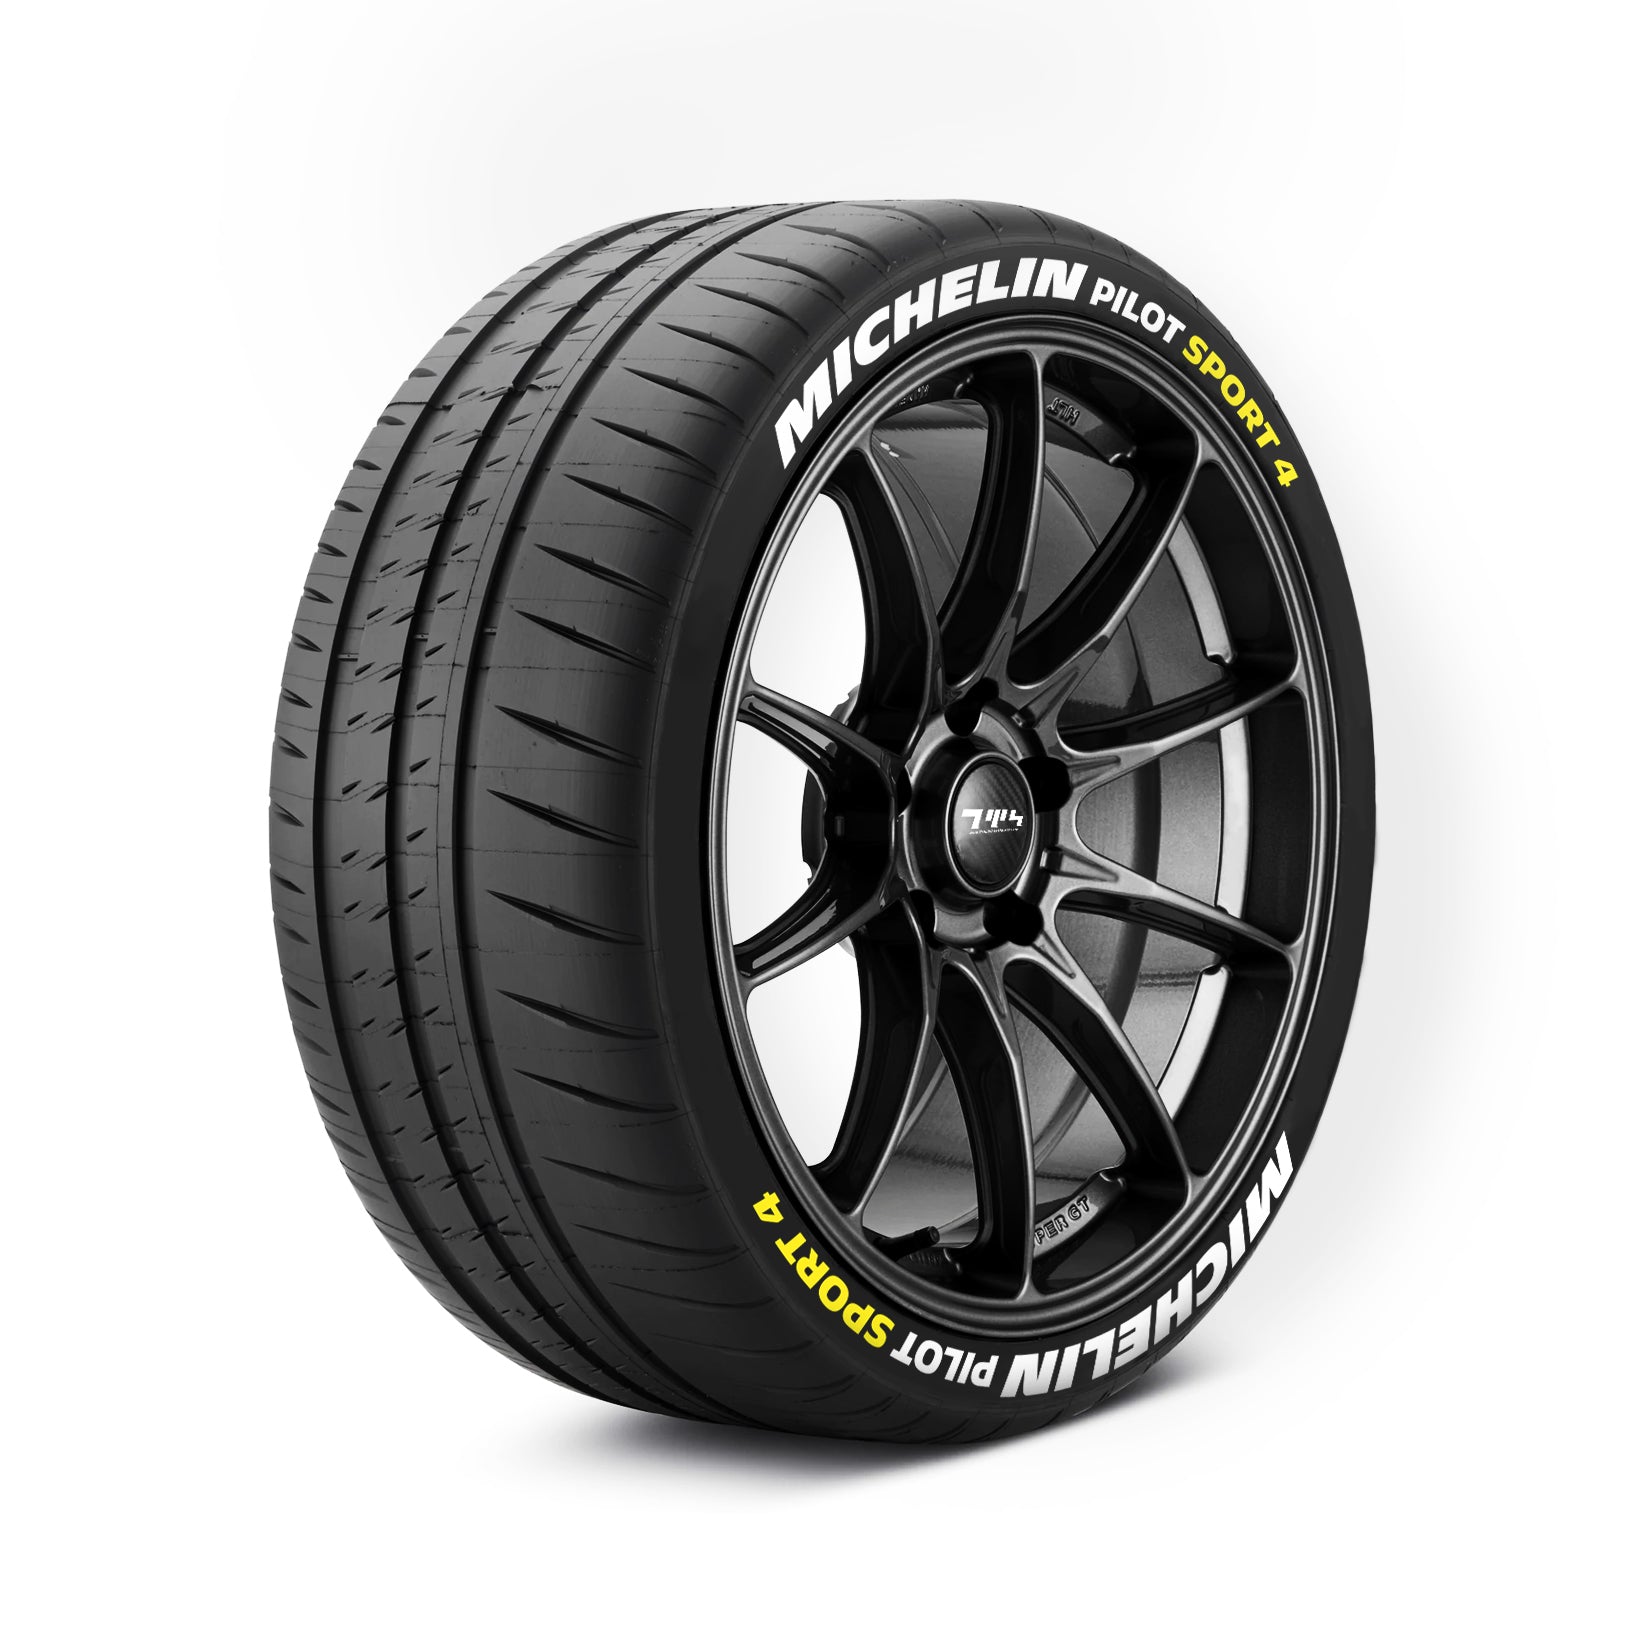 MICHELIN Pilot Sport 4/5 Tyre Stickers Kit